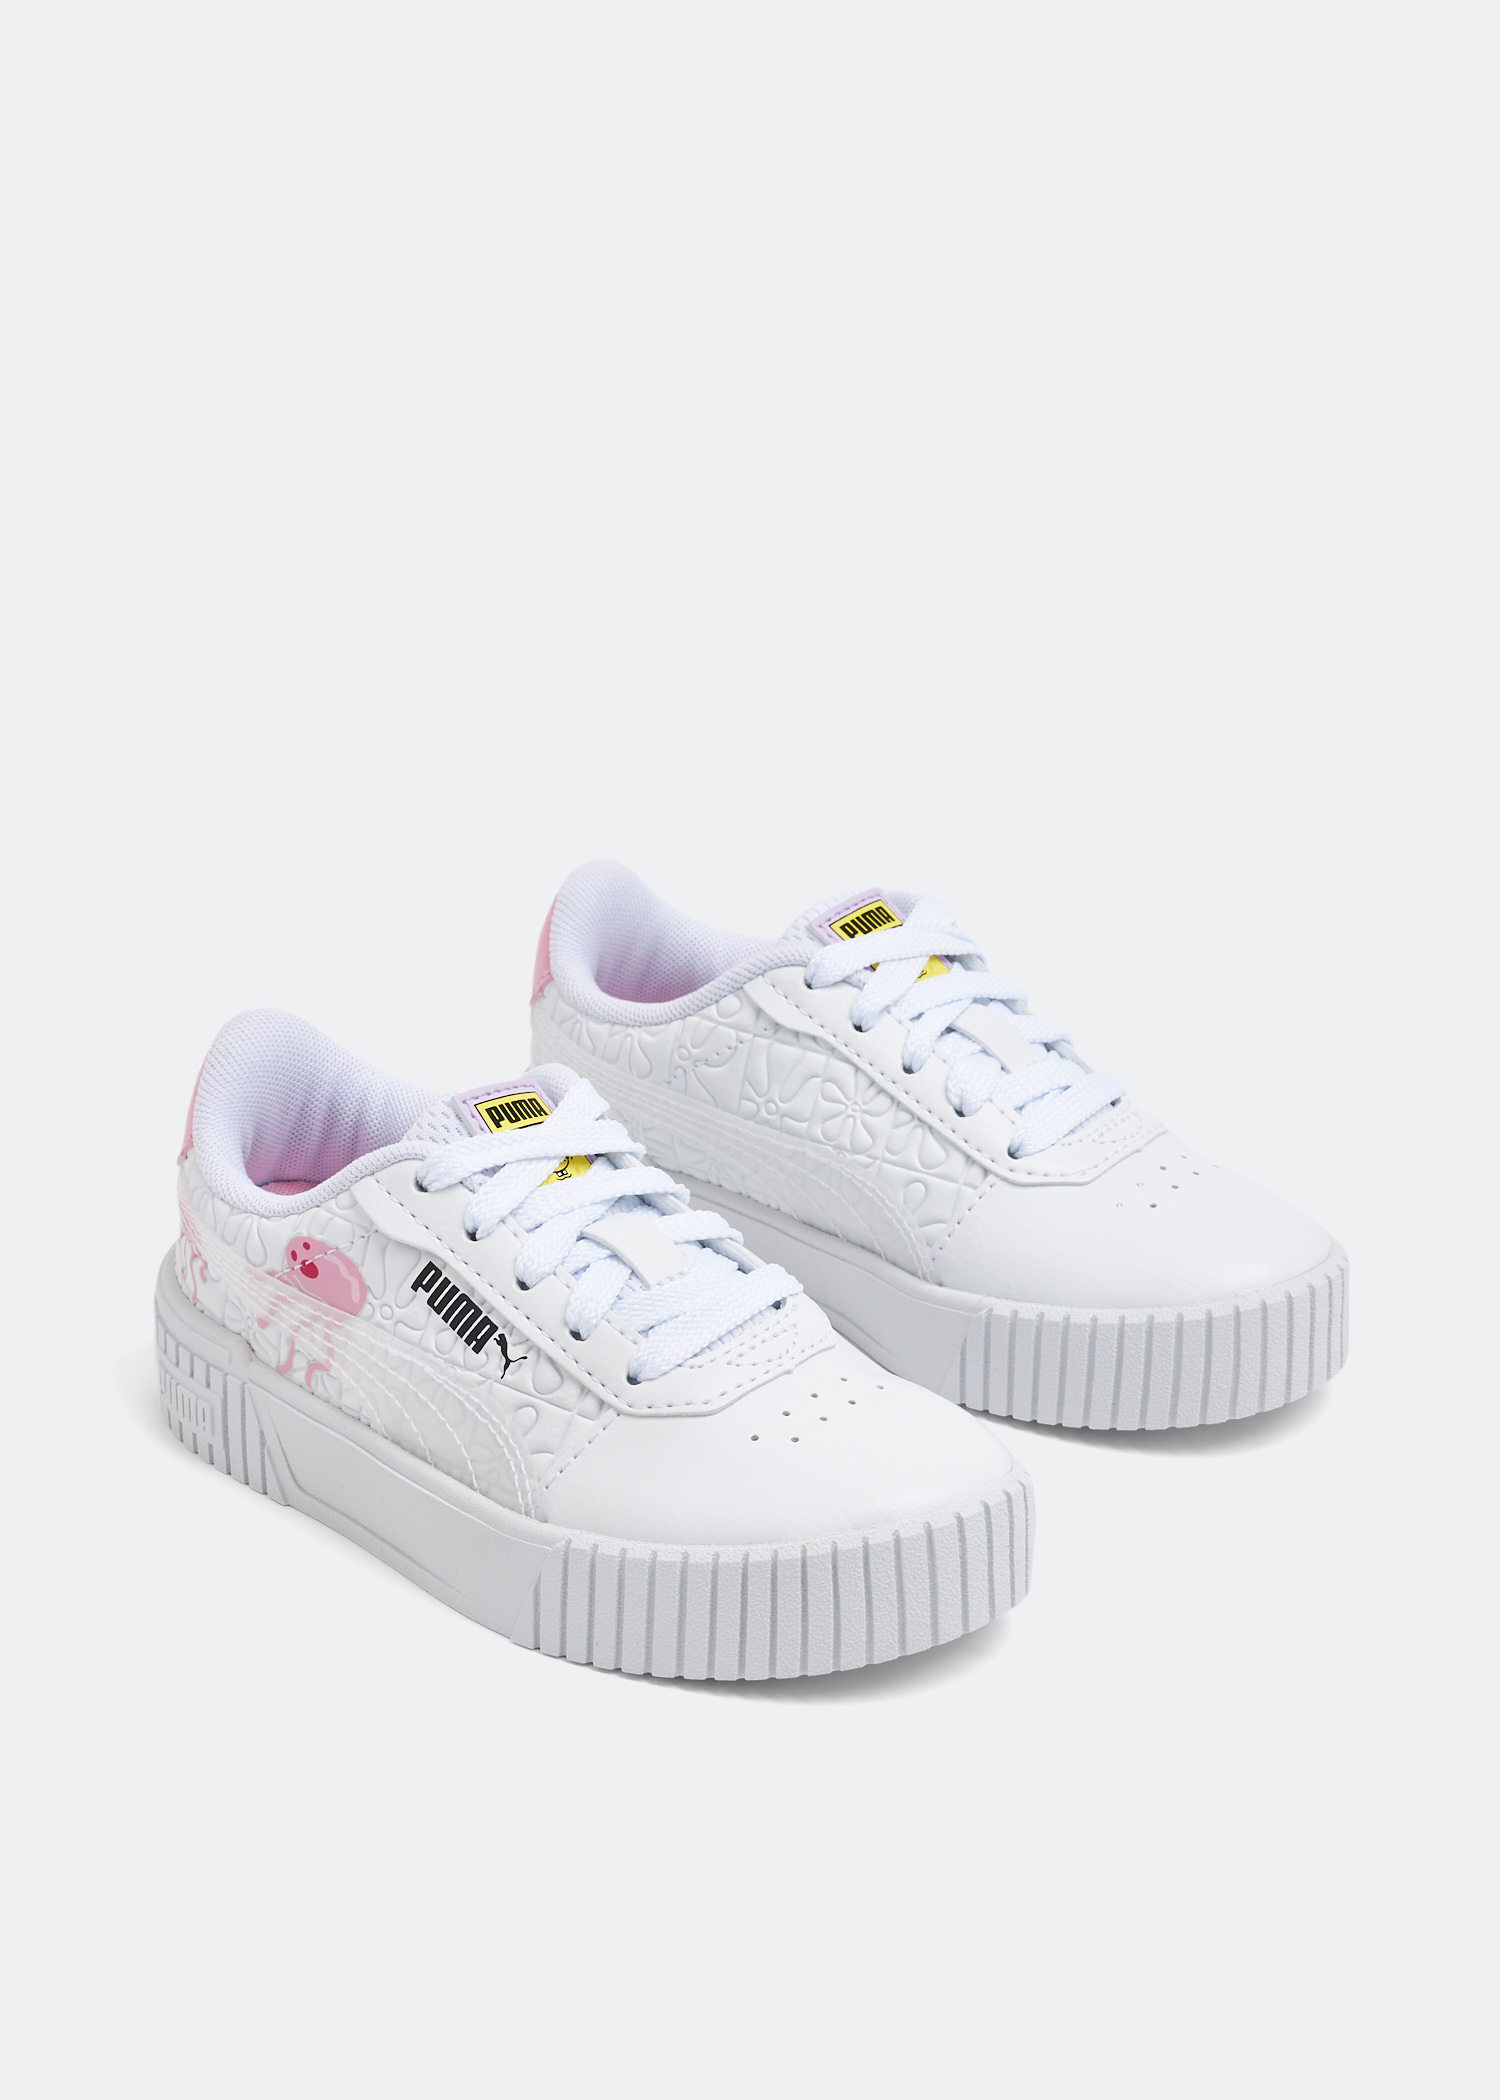 Puma x SpongeBob Carina 2.0 sneakers for Girl - White in KSA 